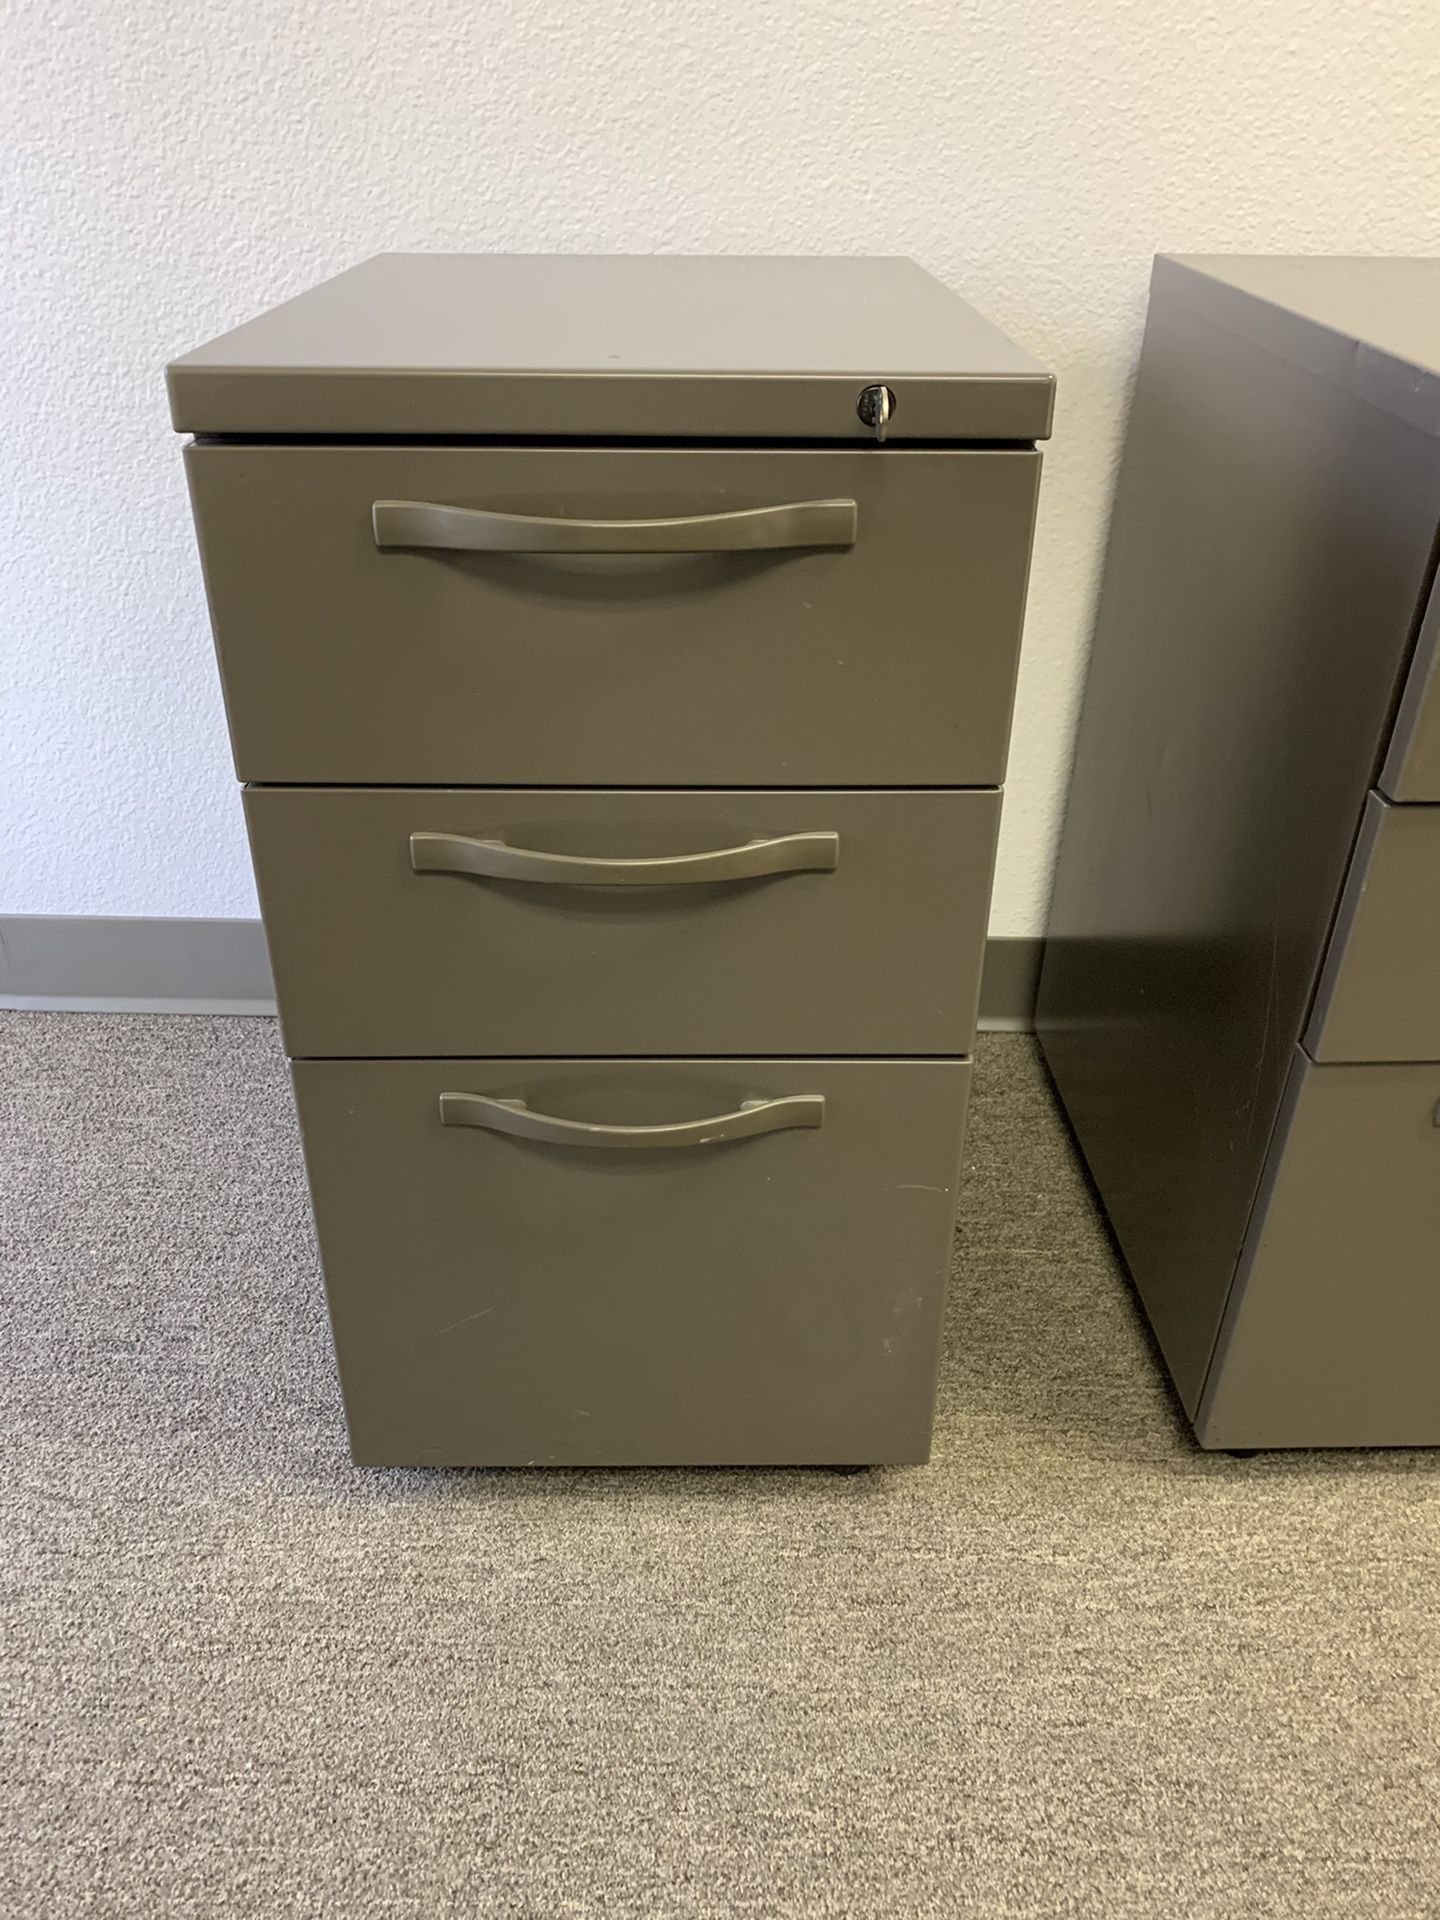 Herman Miller file cabinets, Q Mobile Pedestals